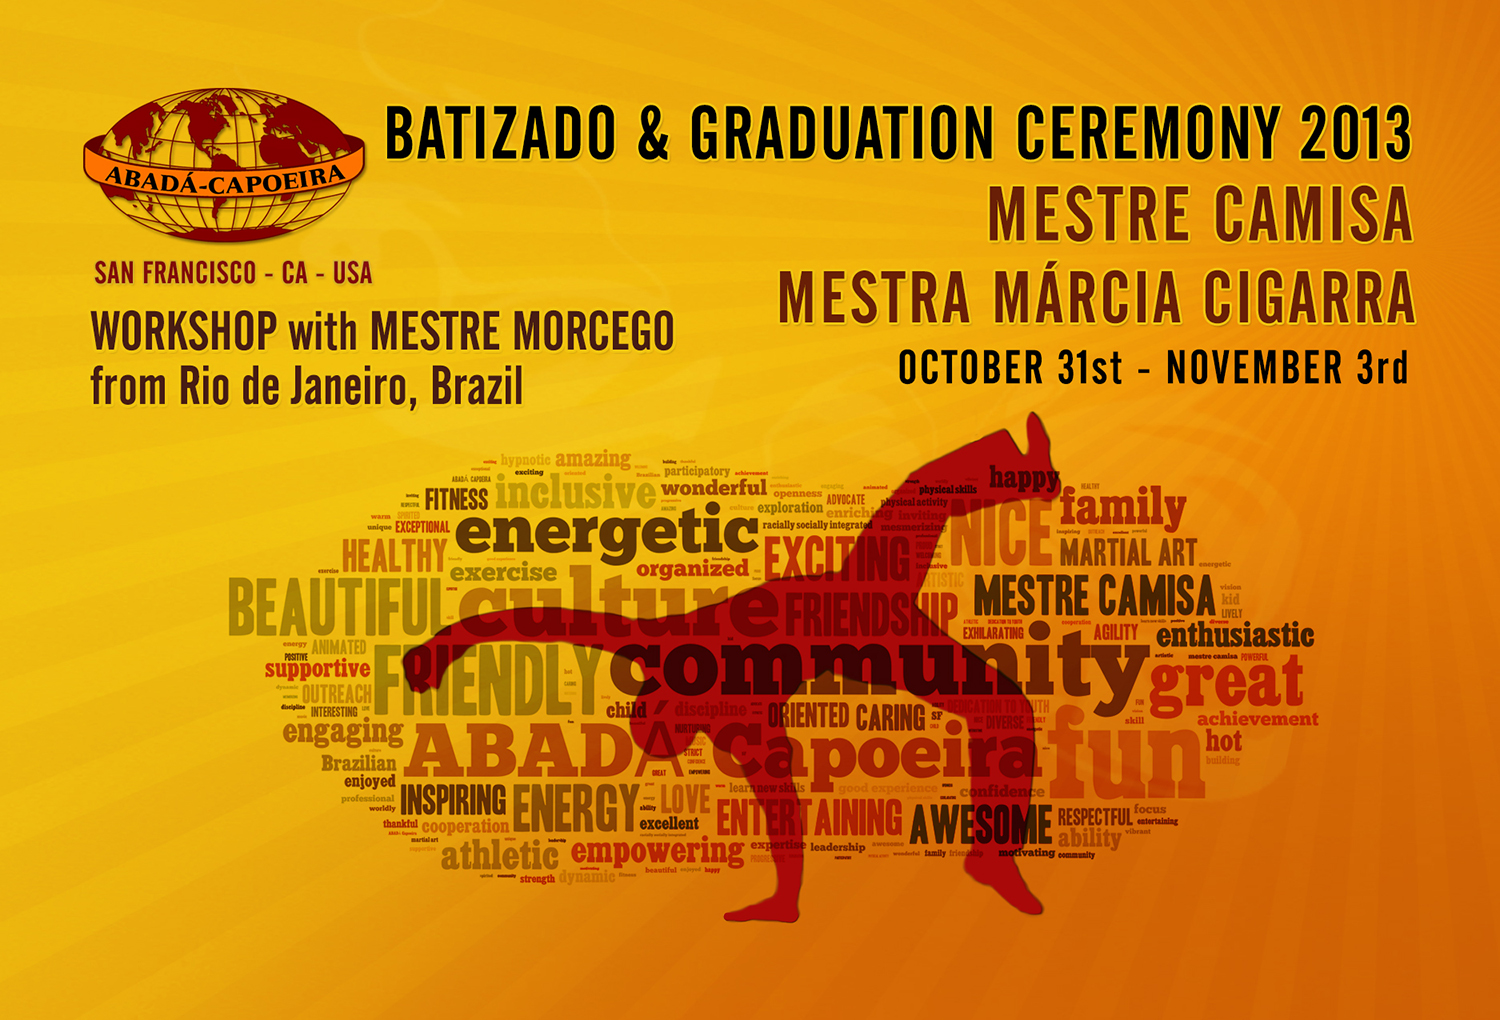 ABADÁ-Capoeira San Francisco Celebrates 22nd Batizado and Graduation Ceremony